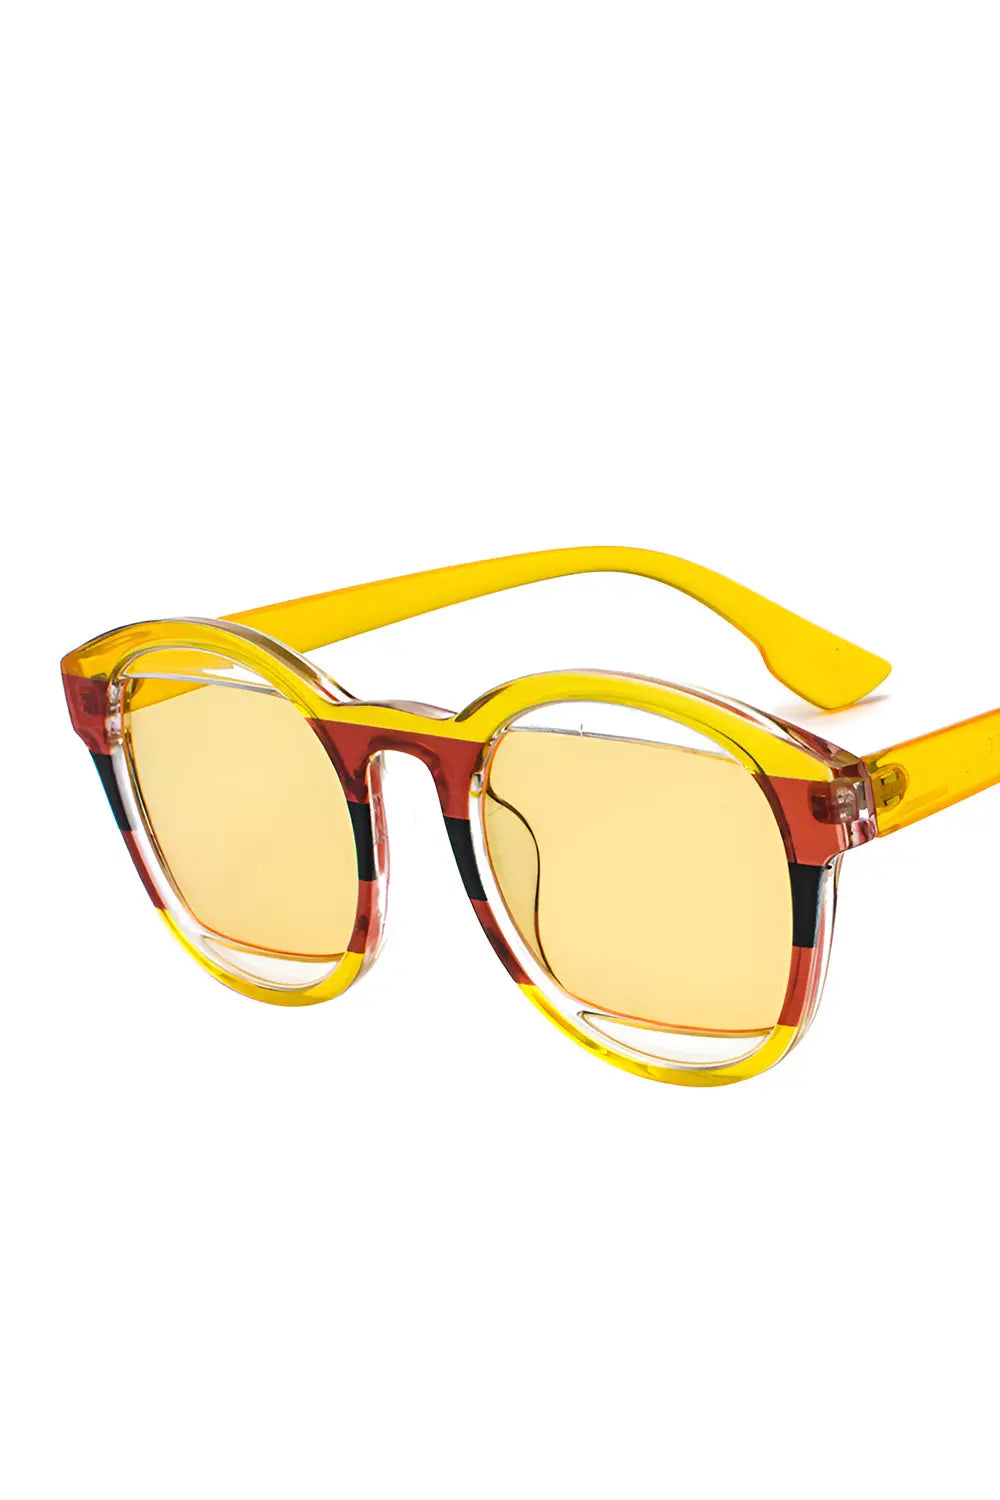 Multicolored Sunglasses - Yellow - Strange Clothes